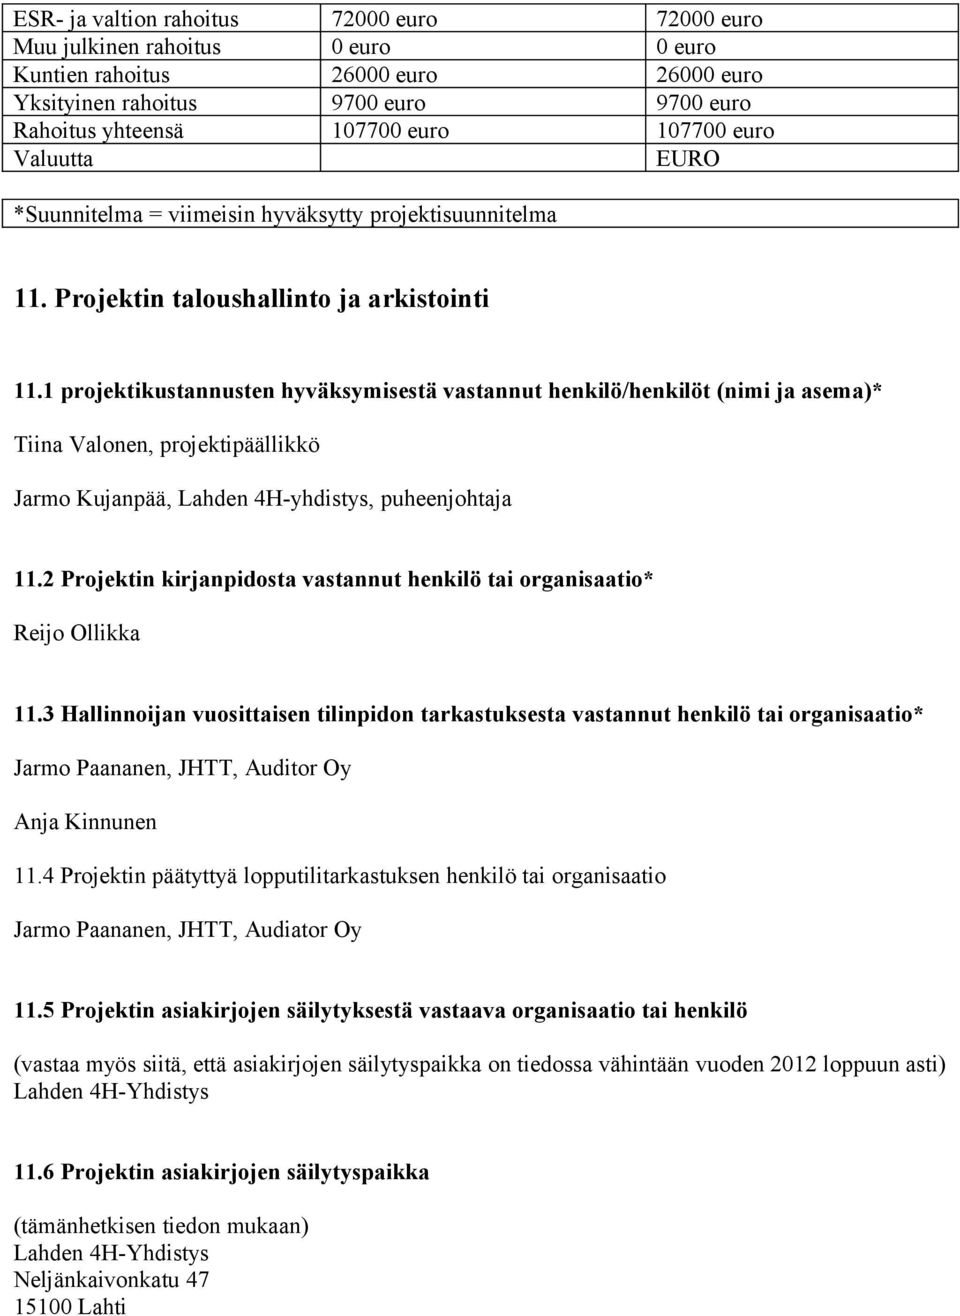 1 projektikustannusten hyväksymisestä vastannut henkilö/henkilöt (nimi ja asema)* Tiina Valonen, projektipäällikkö Jarmo Kujanpää, Lahden 4H-yhdistys, puheenjohtaja 11.